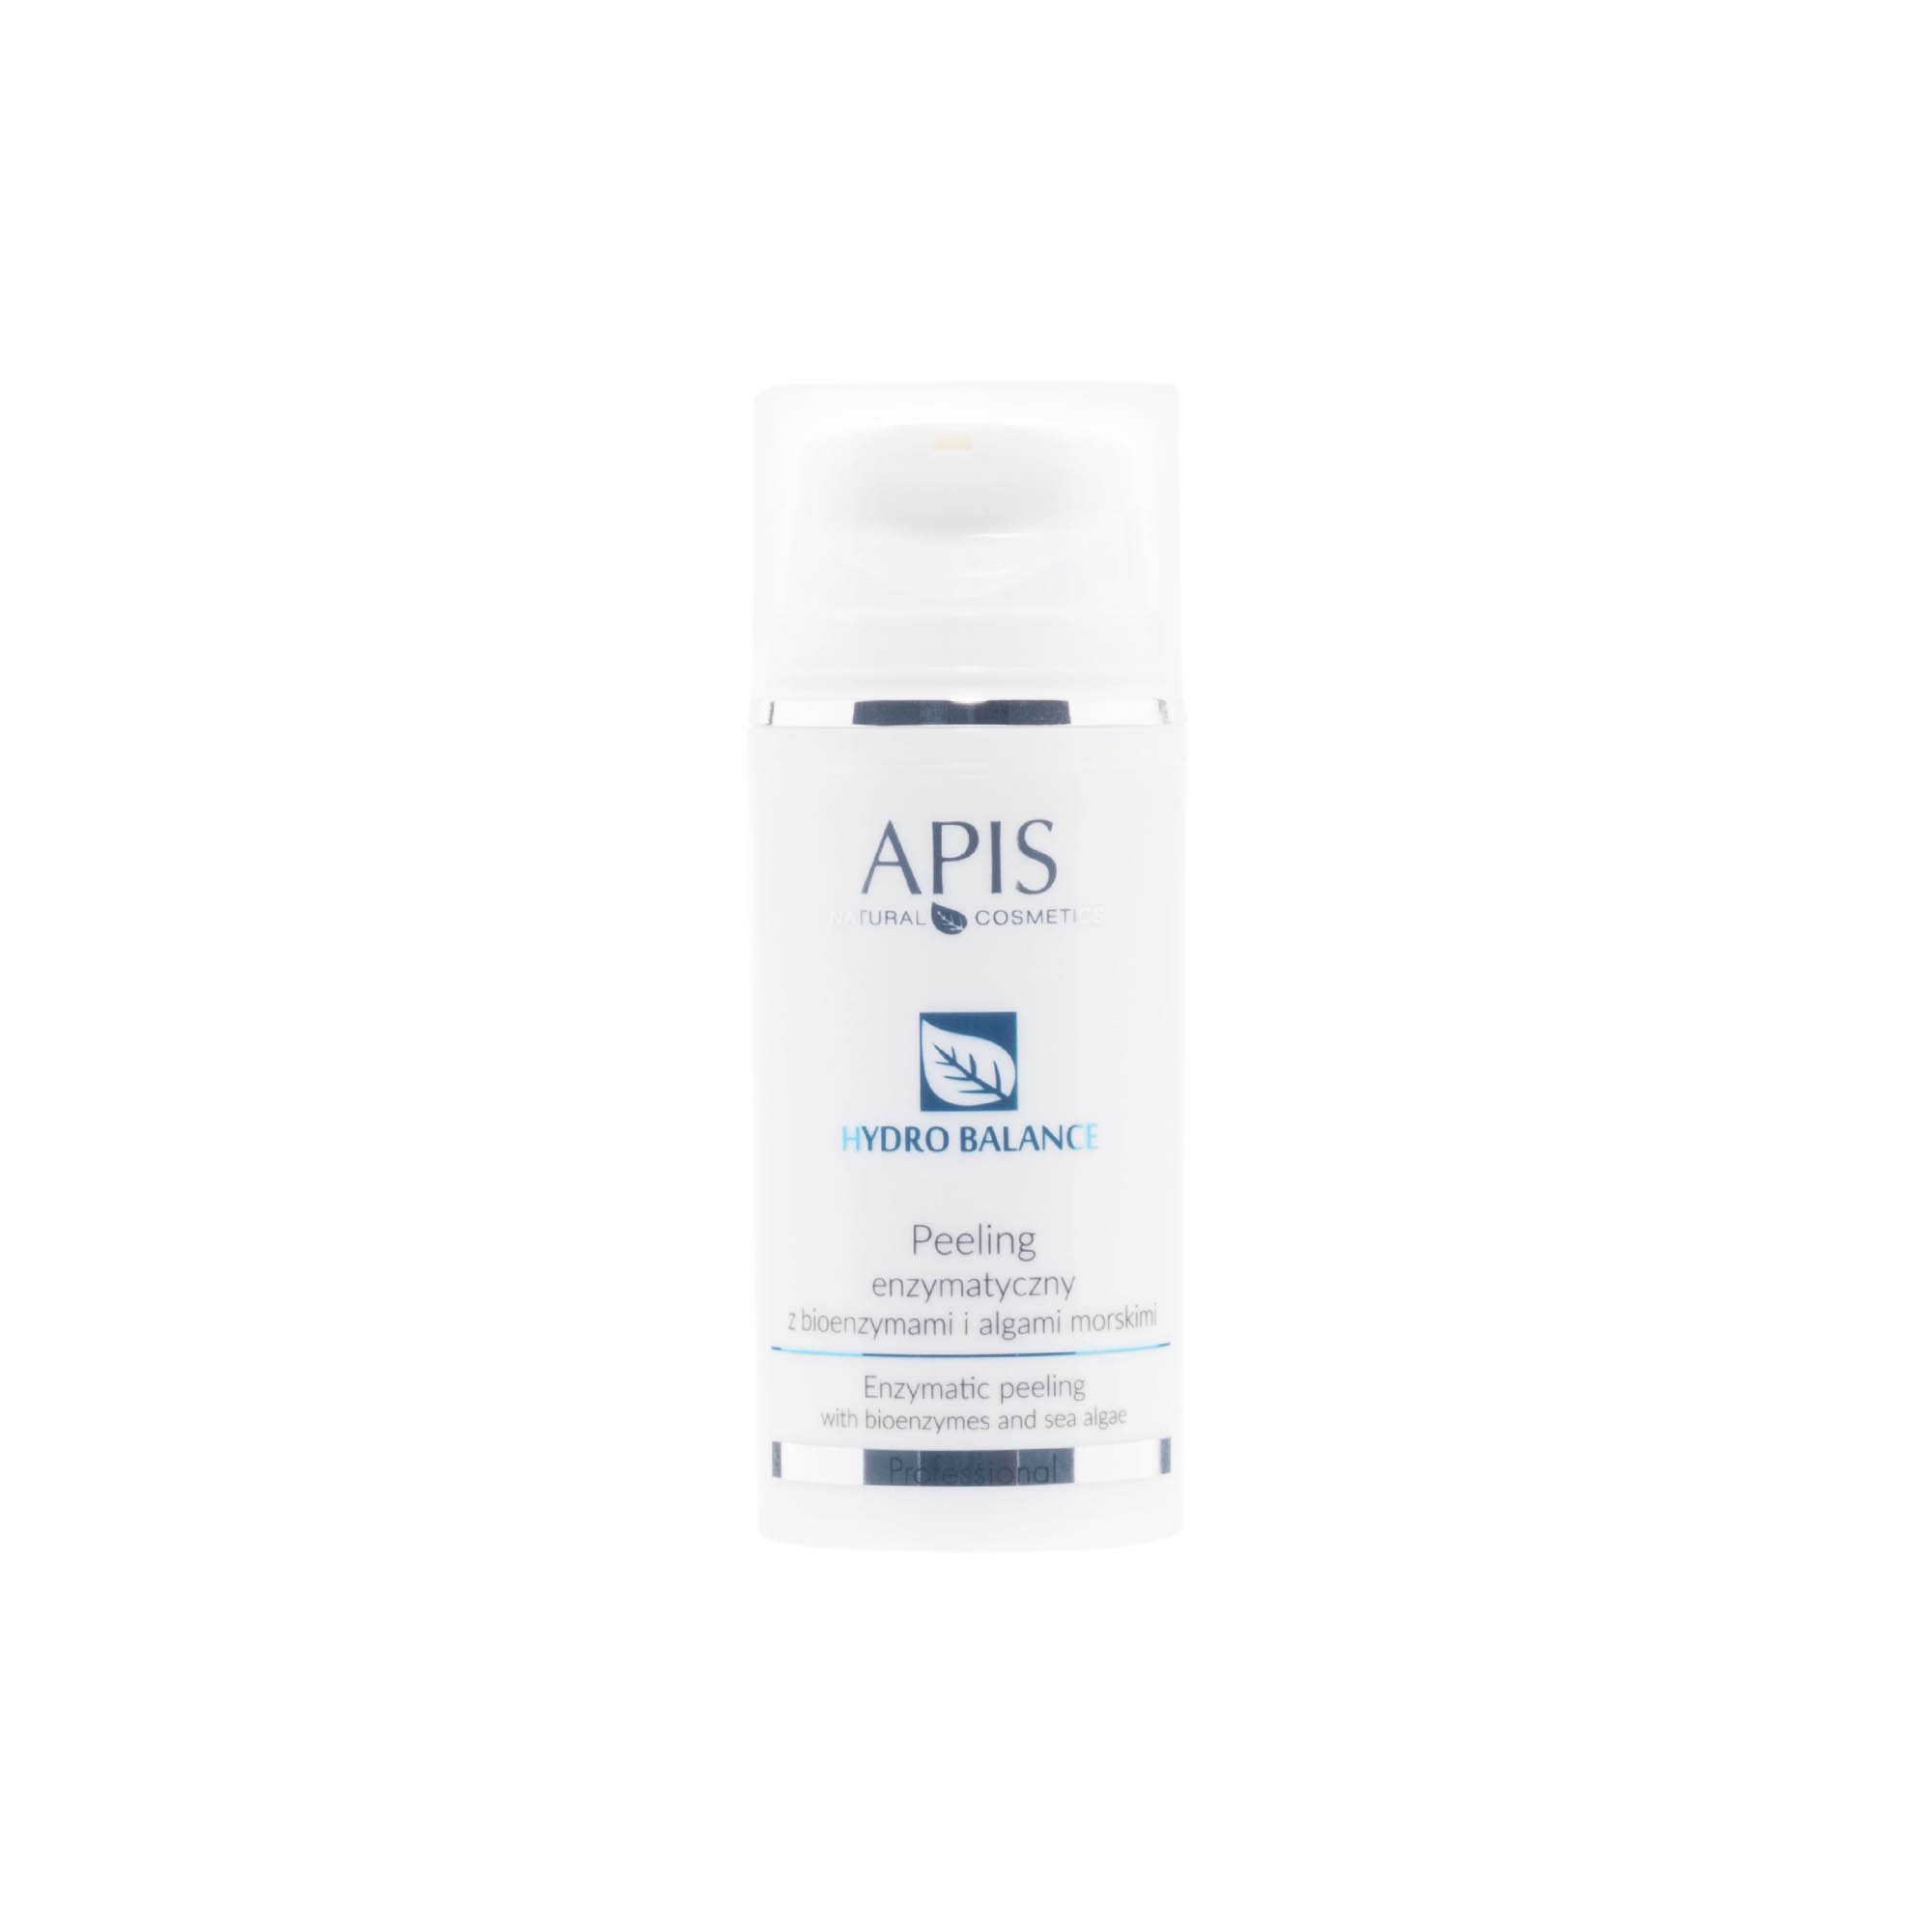 APIS – HYDRO BALANCE – Peeling Enzymatyczny – Z Bioenzymami i Algami Morskimi 100ml (50085)